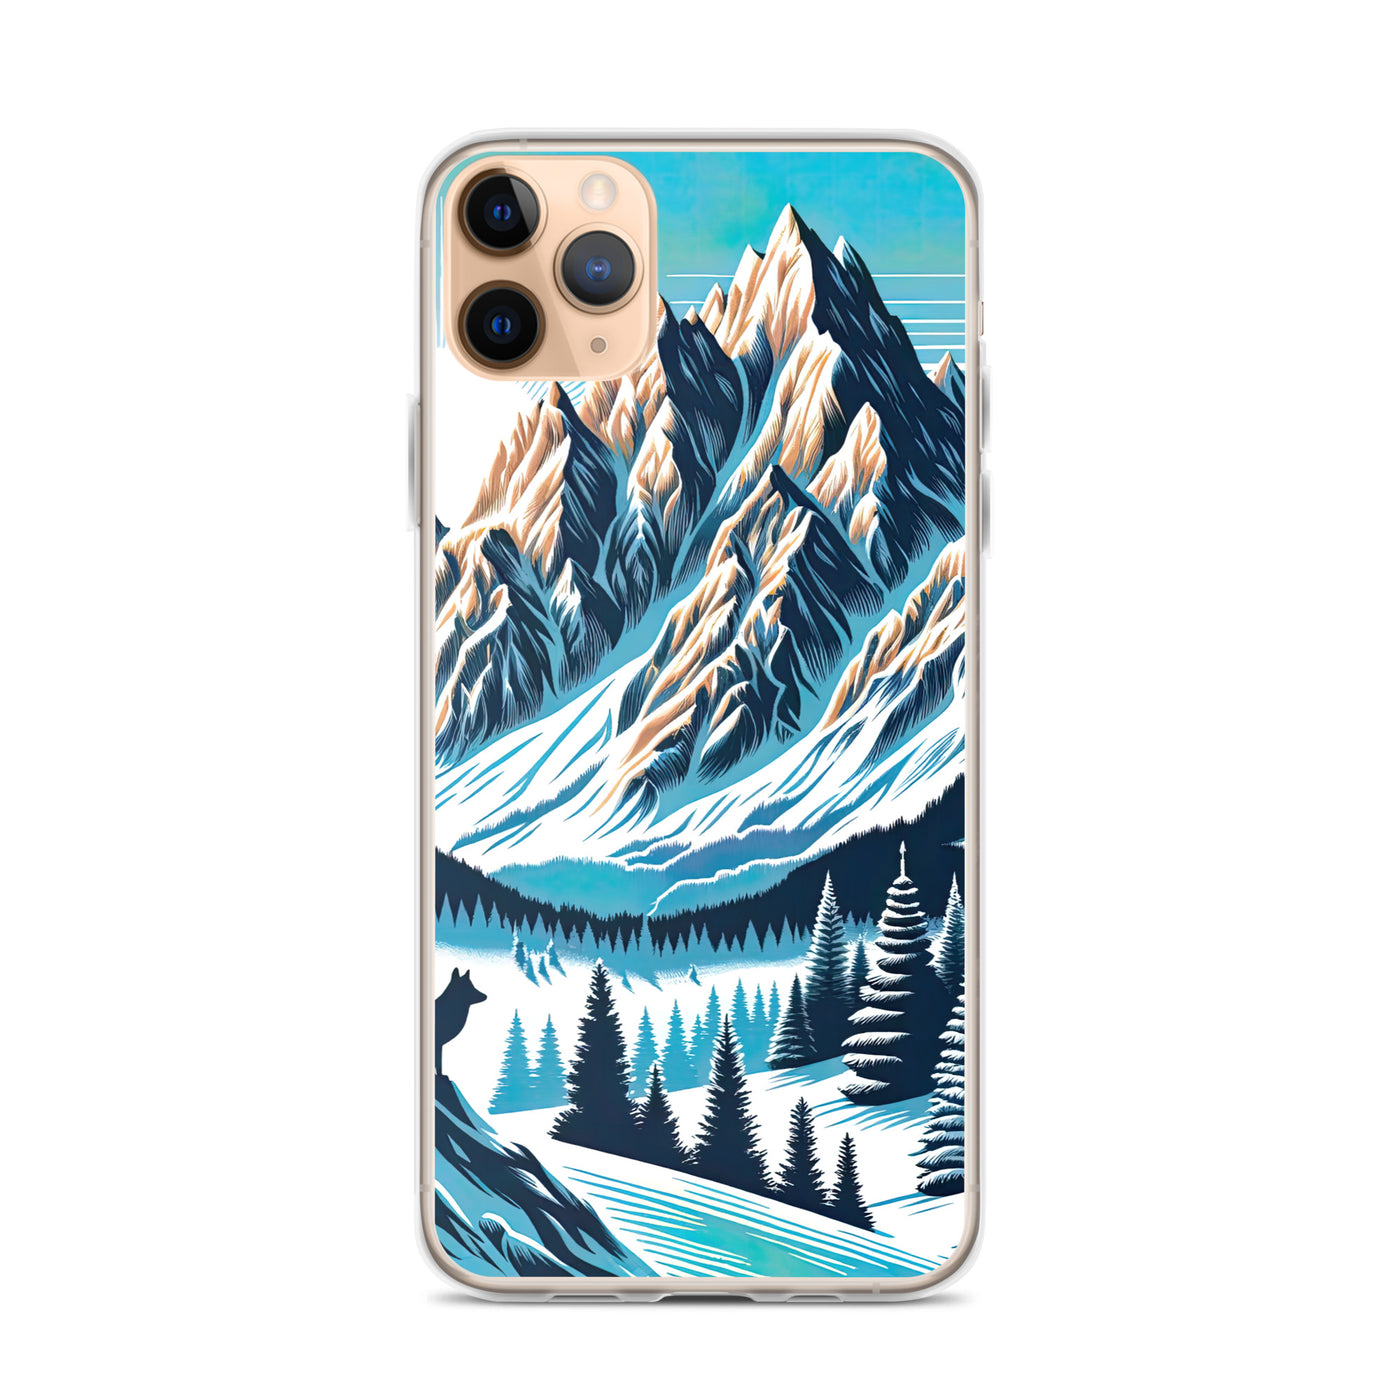 Vektorgrafik eines Wolfes im winterlichen Alpenmorgen, Berge mit Schnee- und Felsmustern - iPhone Schutzhülle (durchsichtig) berge xxx yyy zzz iPhone 11 Pro Max